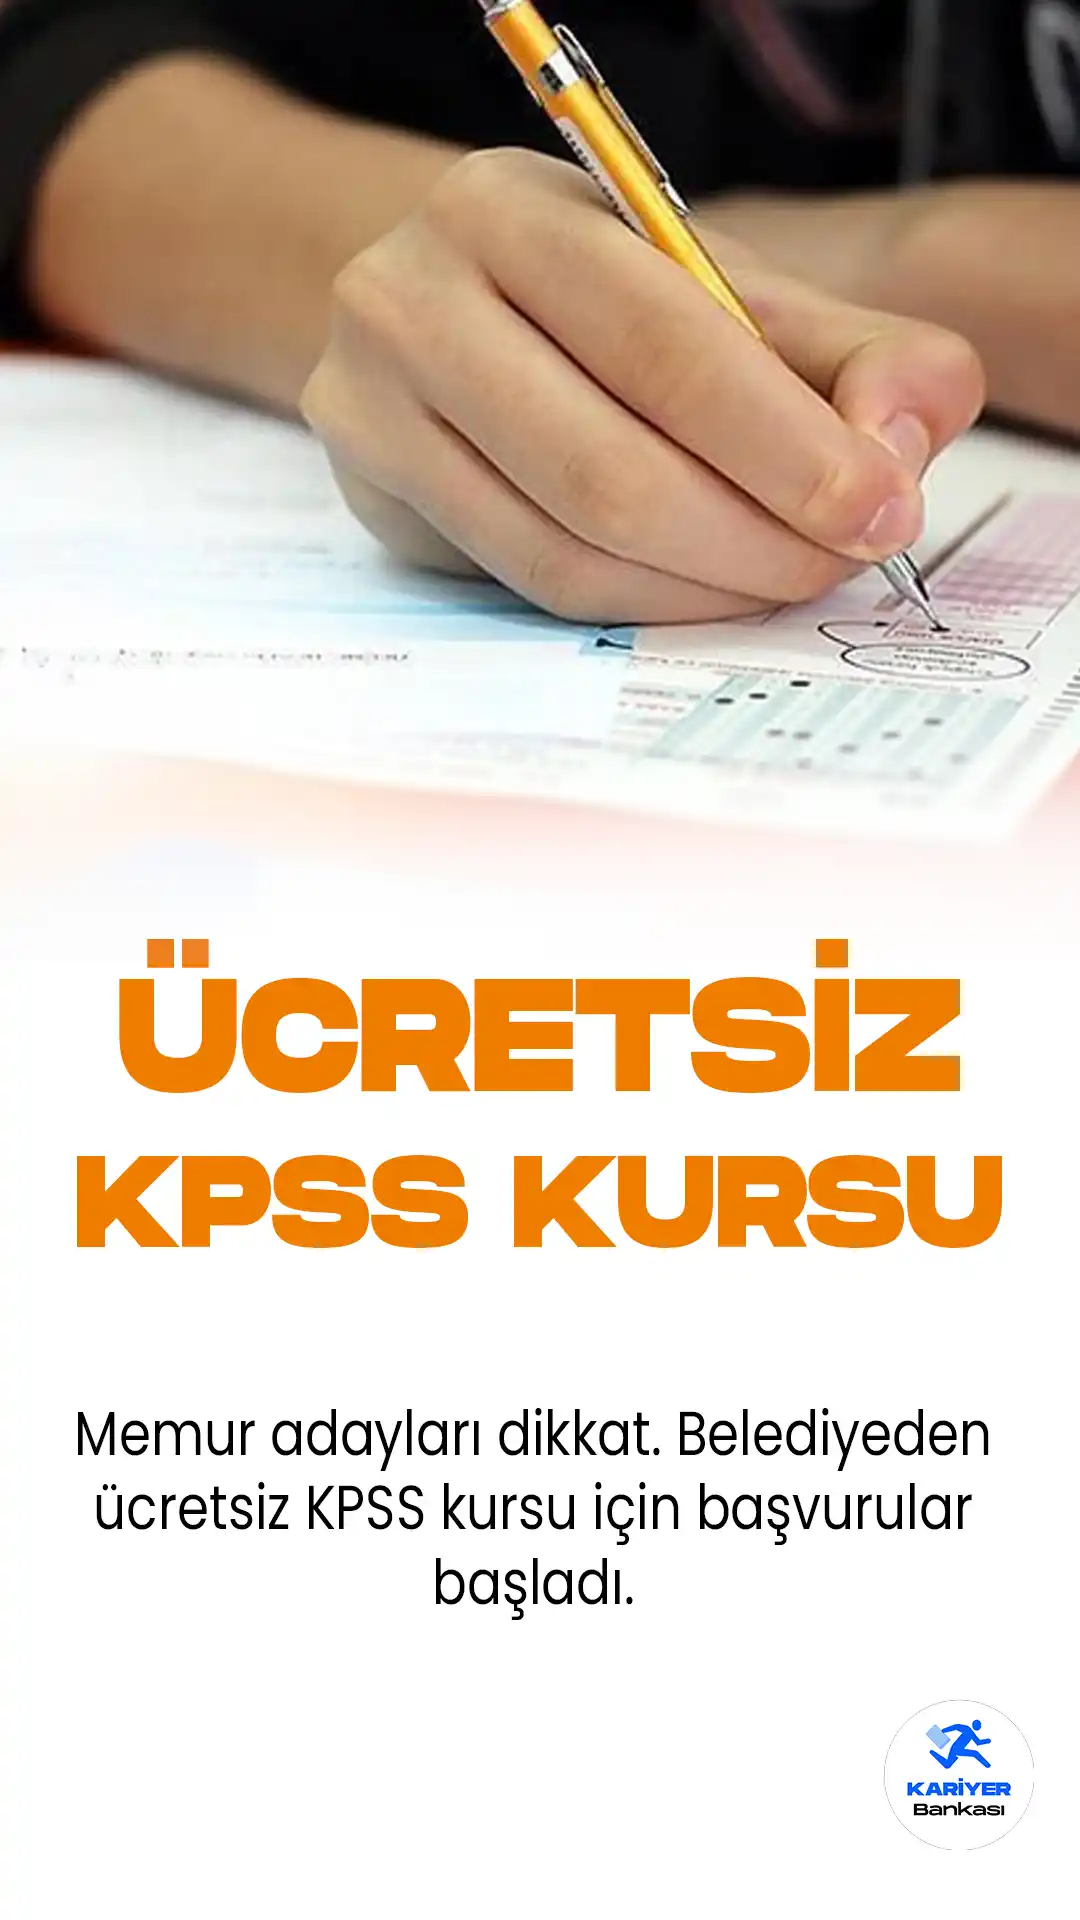 Ankara Büyükşehir Belediyesi ve Benim Hocam Yayıncılık, Kamu Personeli Seçme Sınavı'na (KPSS) girecek adaylara yönelik özgün bir fırsat sunuyor.